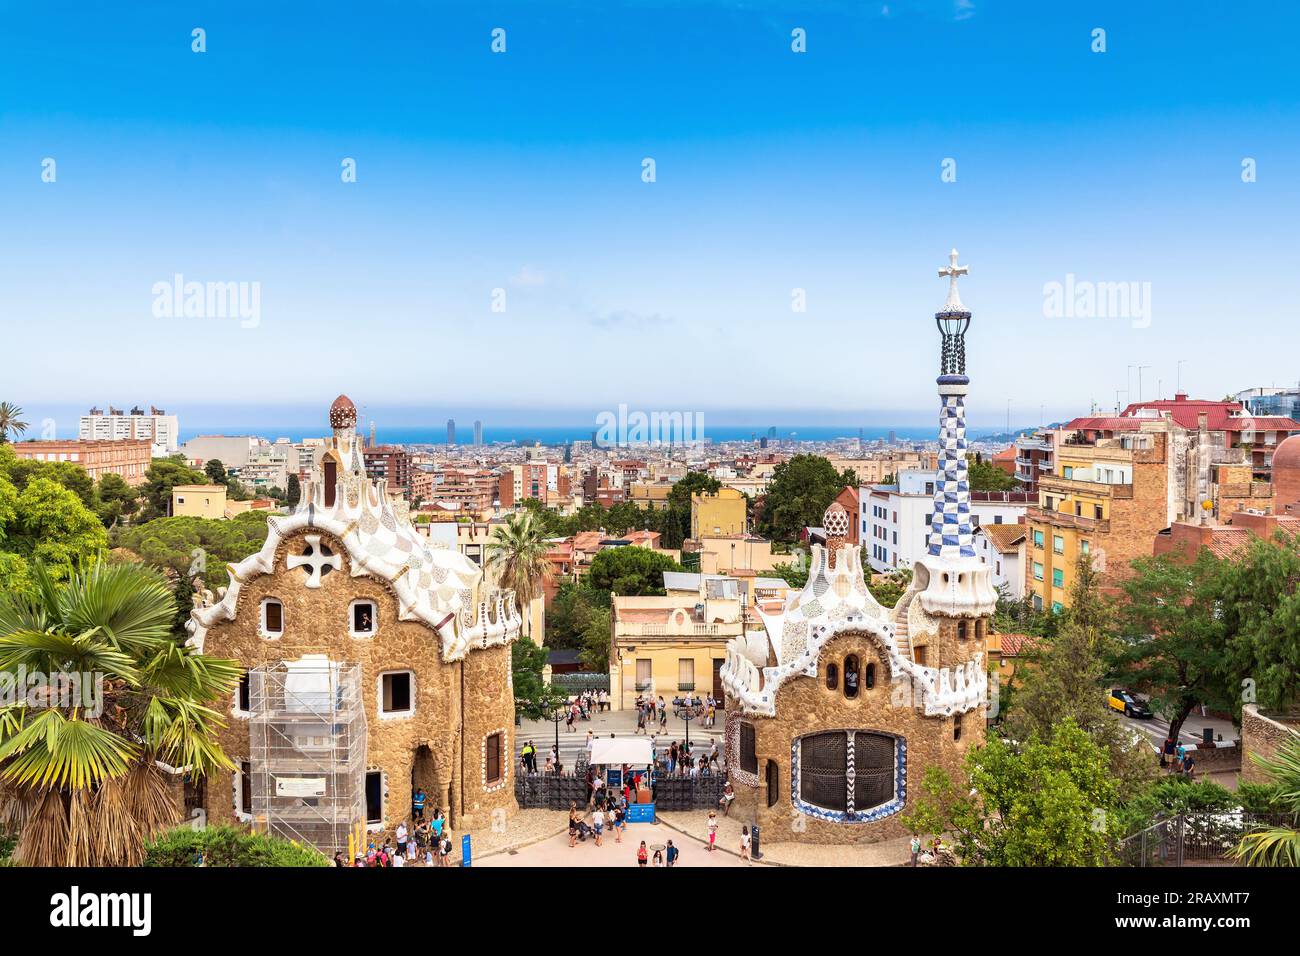 Barcelone, Espagne - 10 juillet 2017 : Skyline de Barcelone, vue depuis le célèbre parc Güell, Espagne. Guell Park est l'une des attractions les plus populaires de Bar Banque D'Images